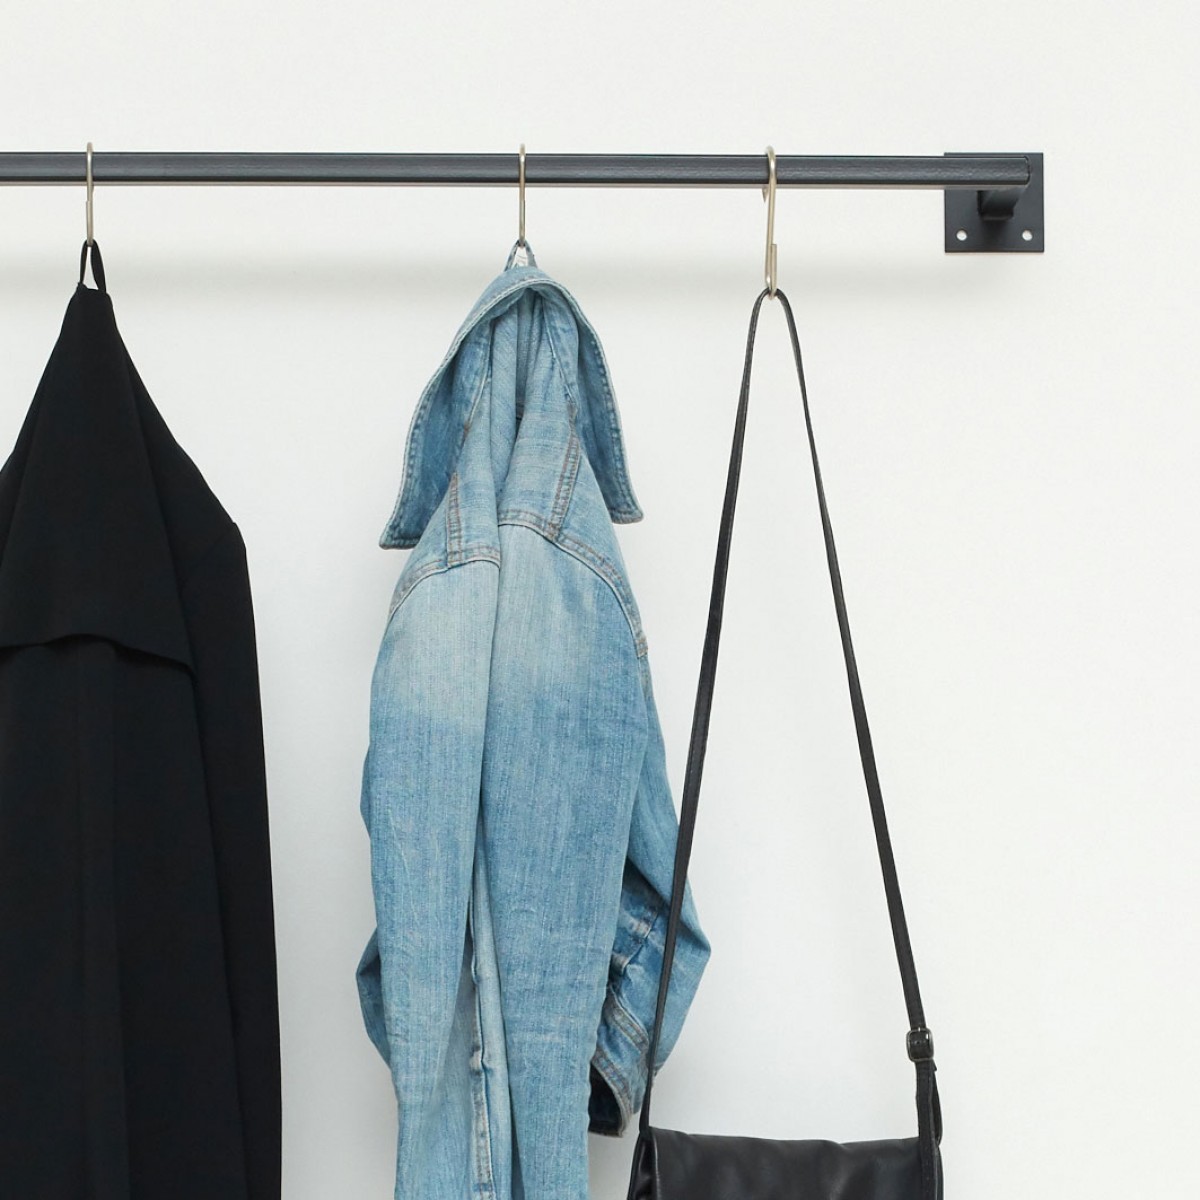 various Kleiderstange im Industrial Style skandinavisch - geschweisst & pulverbeschichtet - Garderobe SIMPLE LINE - div. Größen